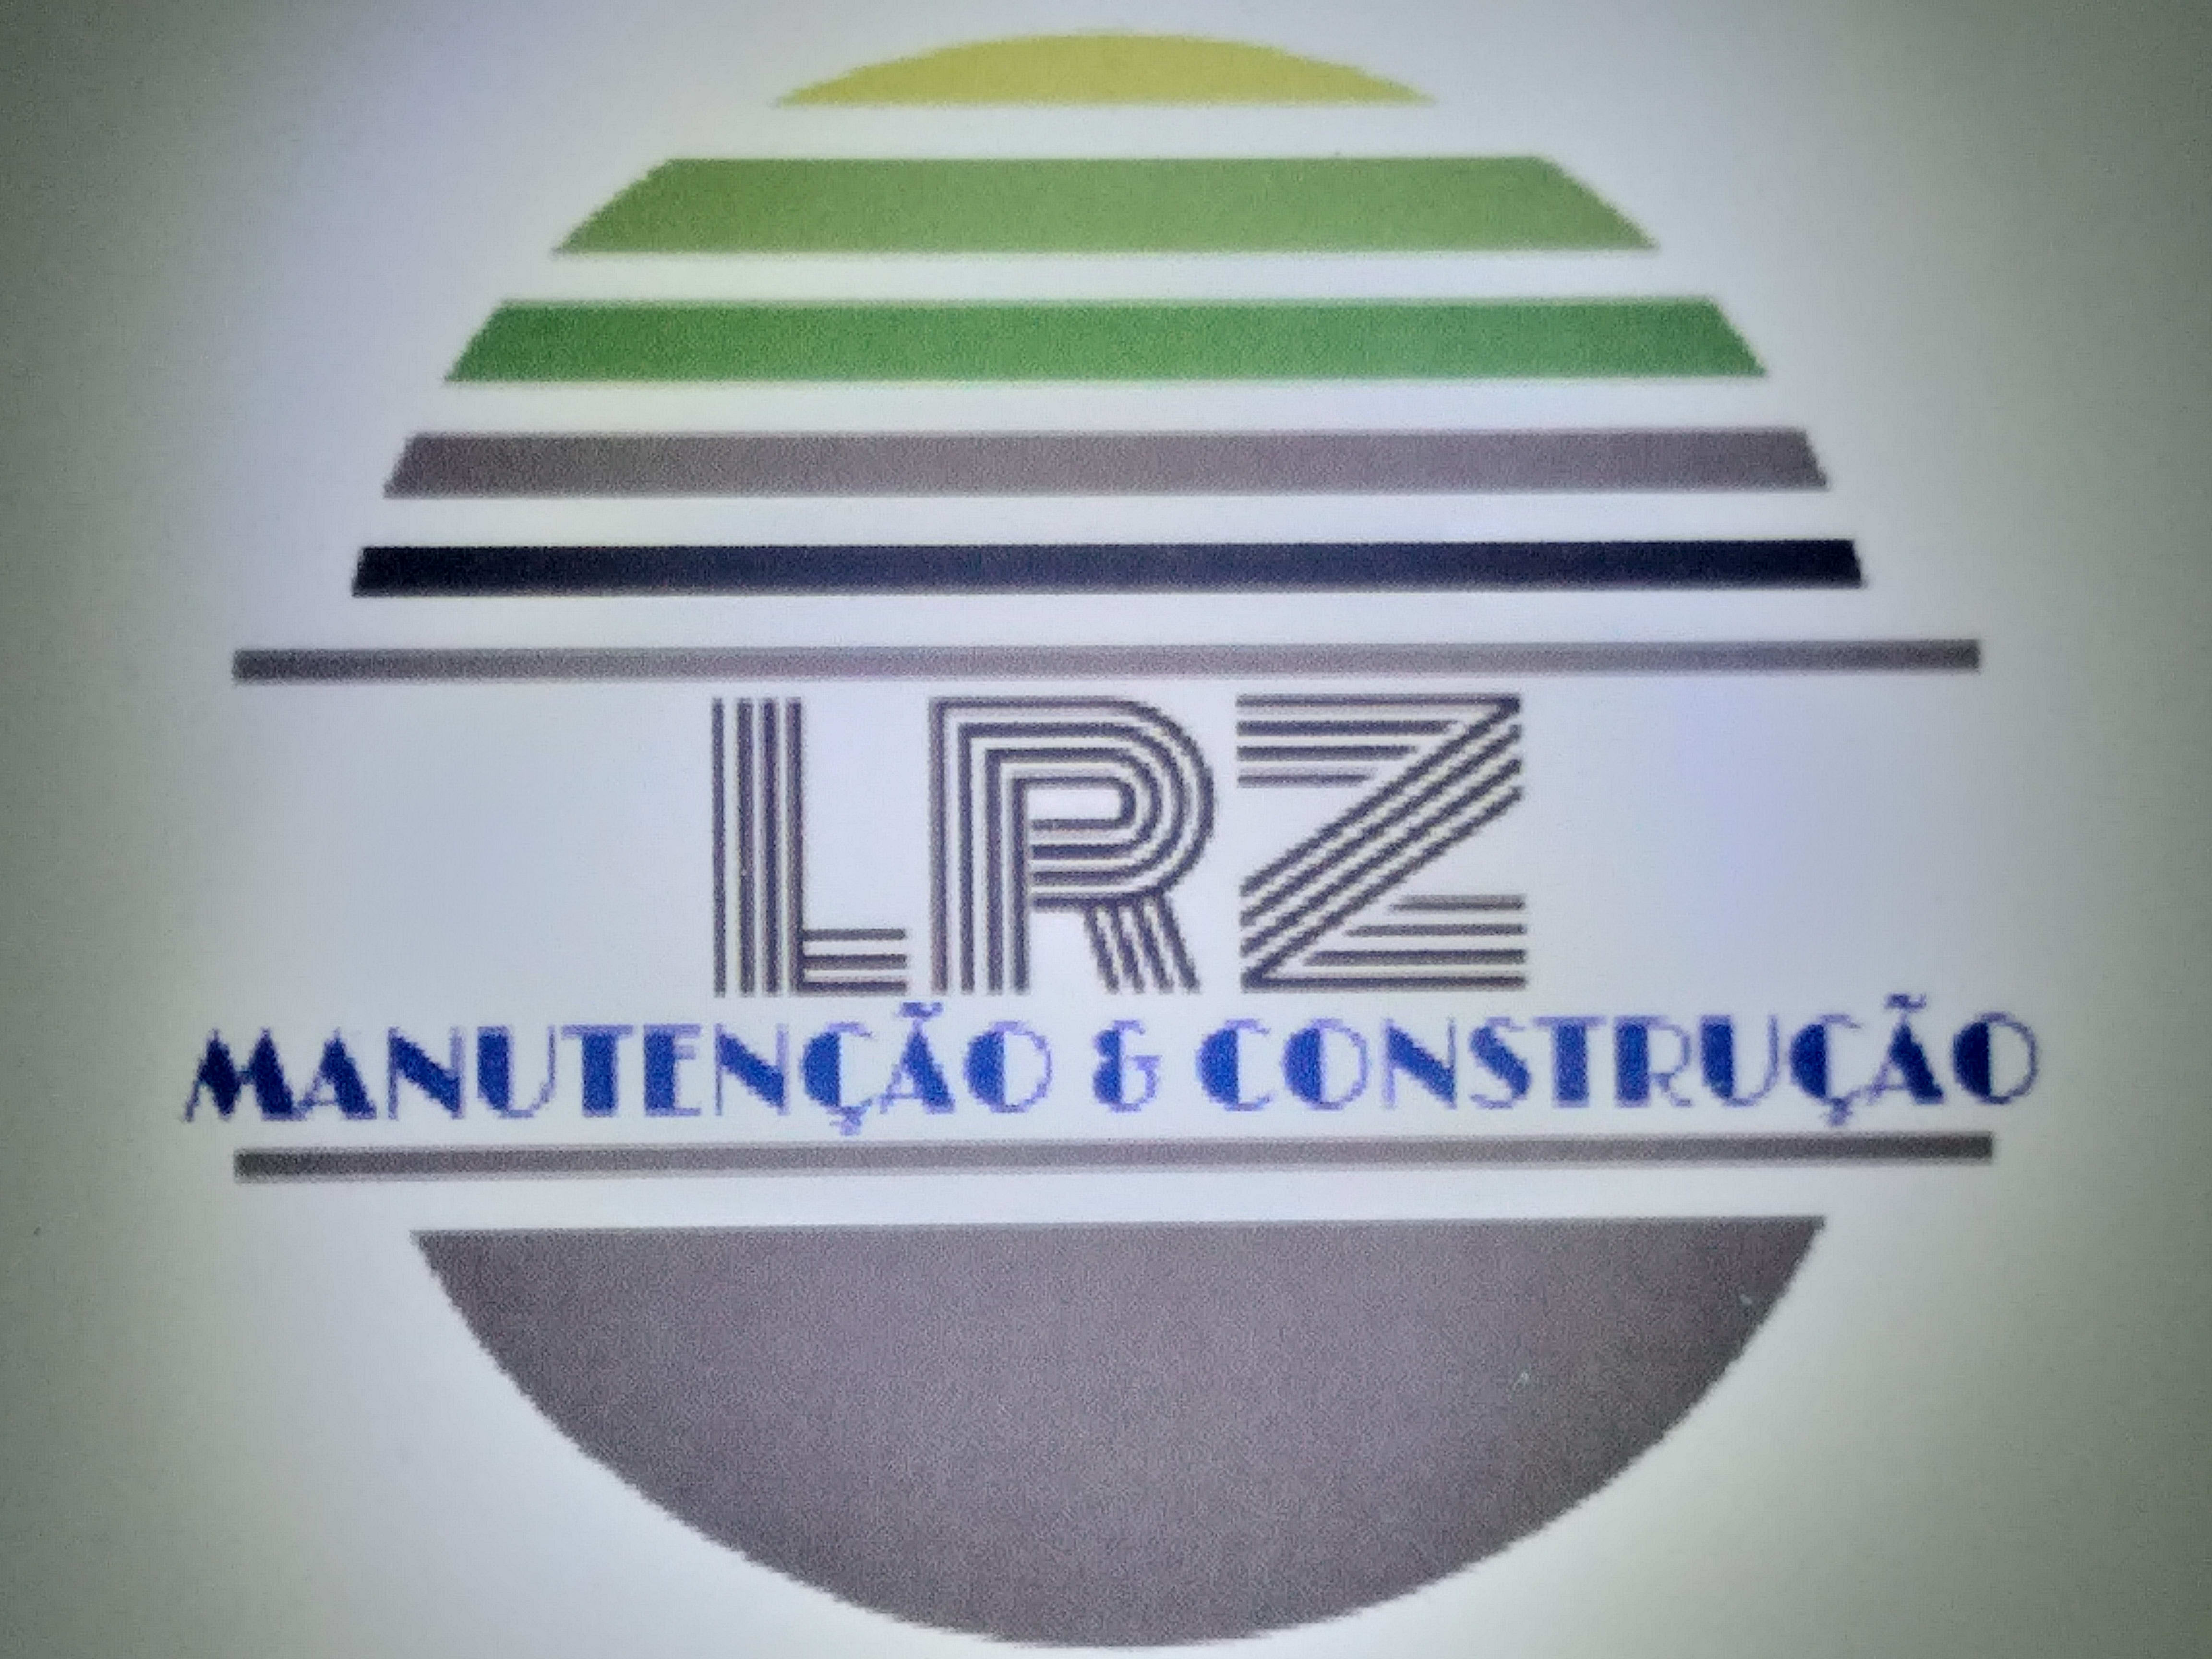 LRZ Manutenções Prediais e Construções